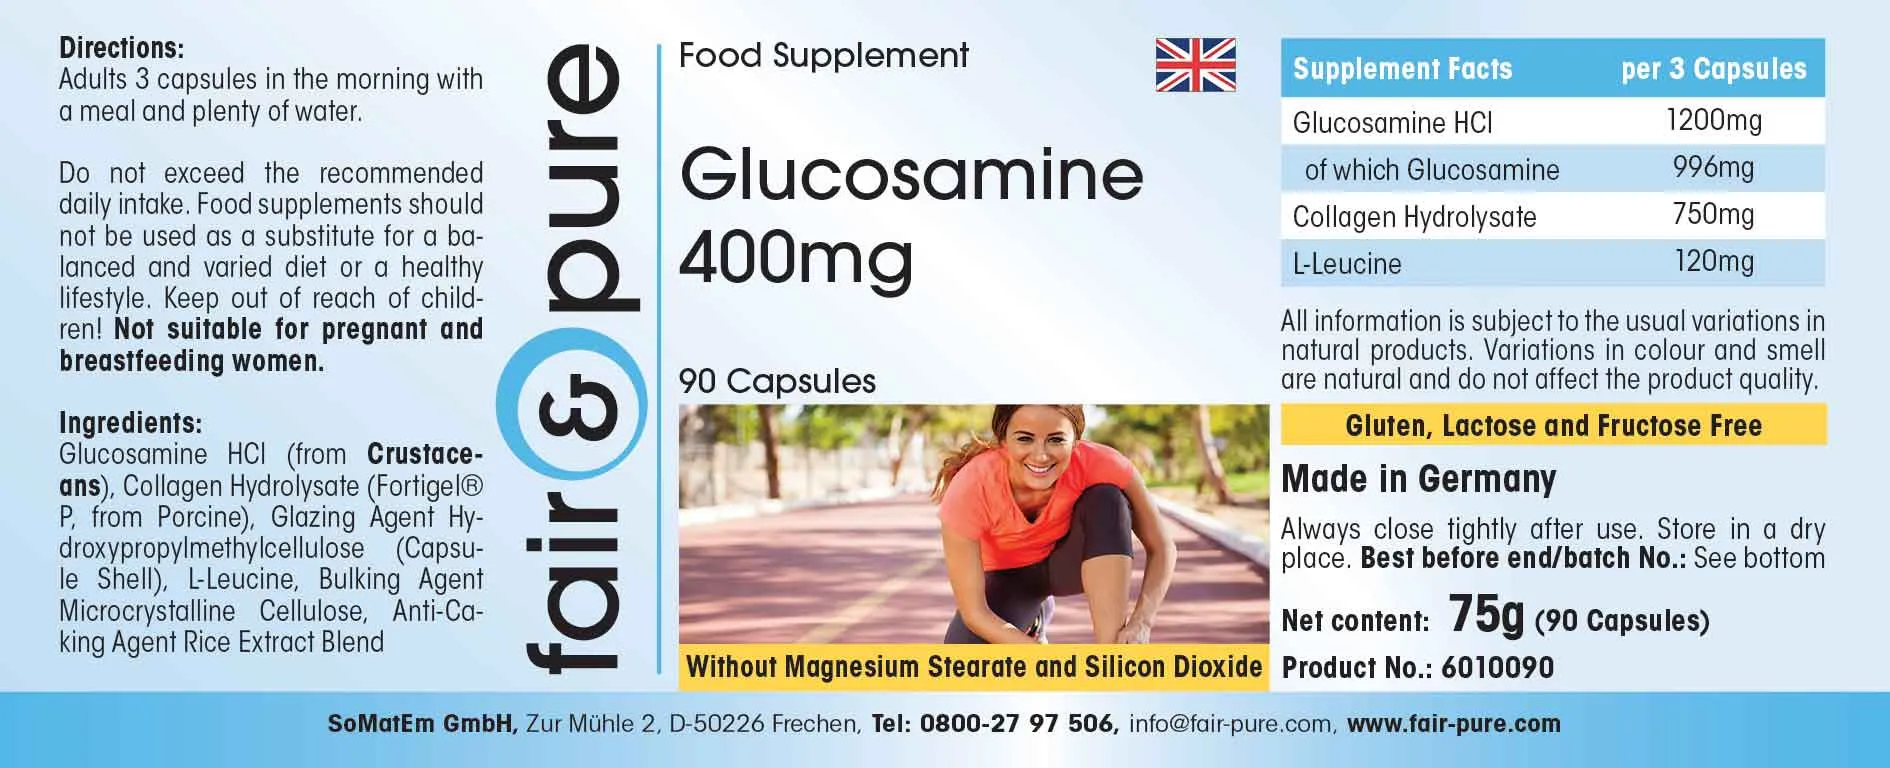 Glucosamin 400mg